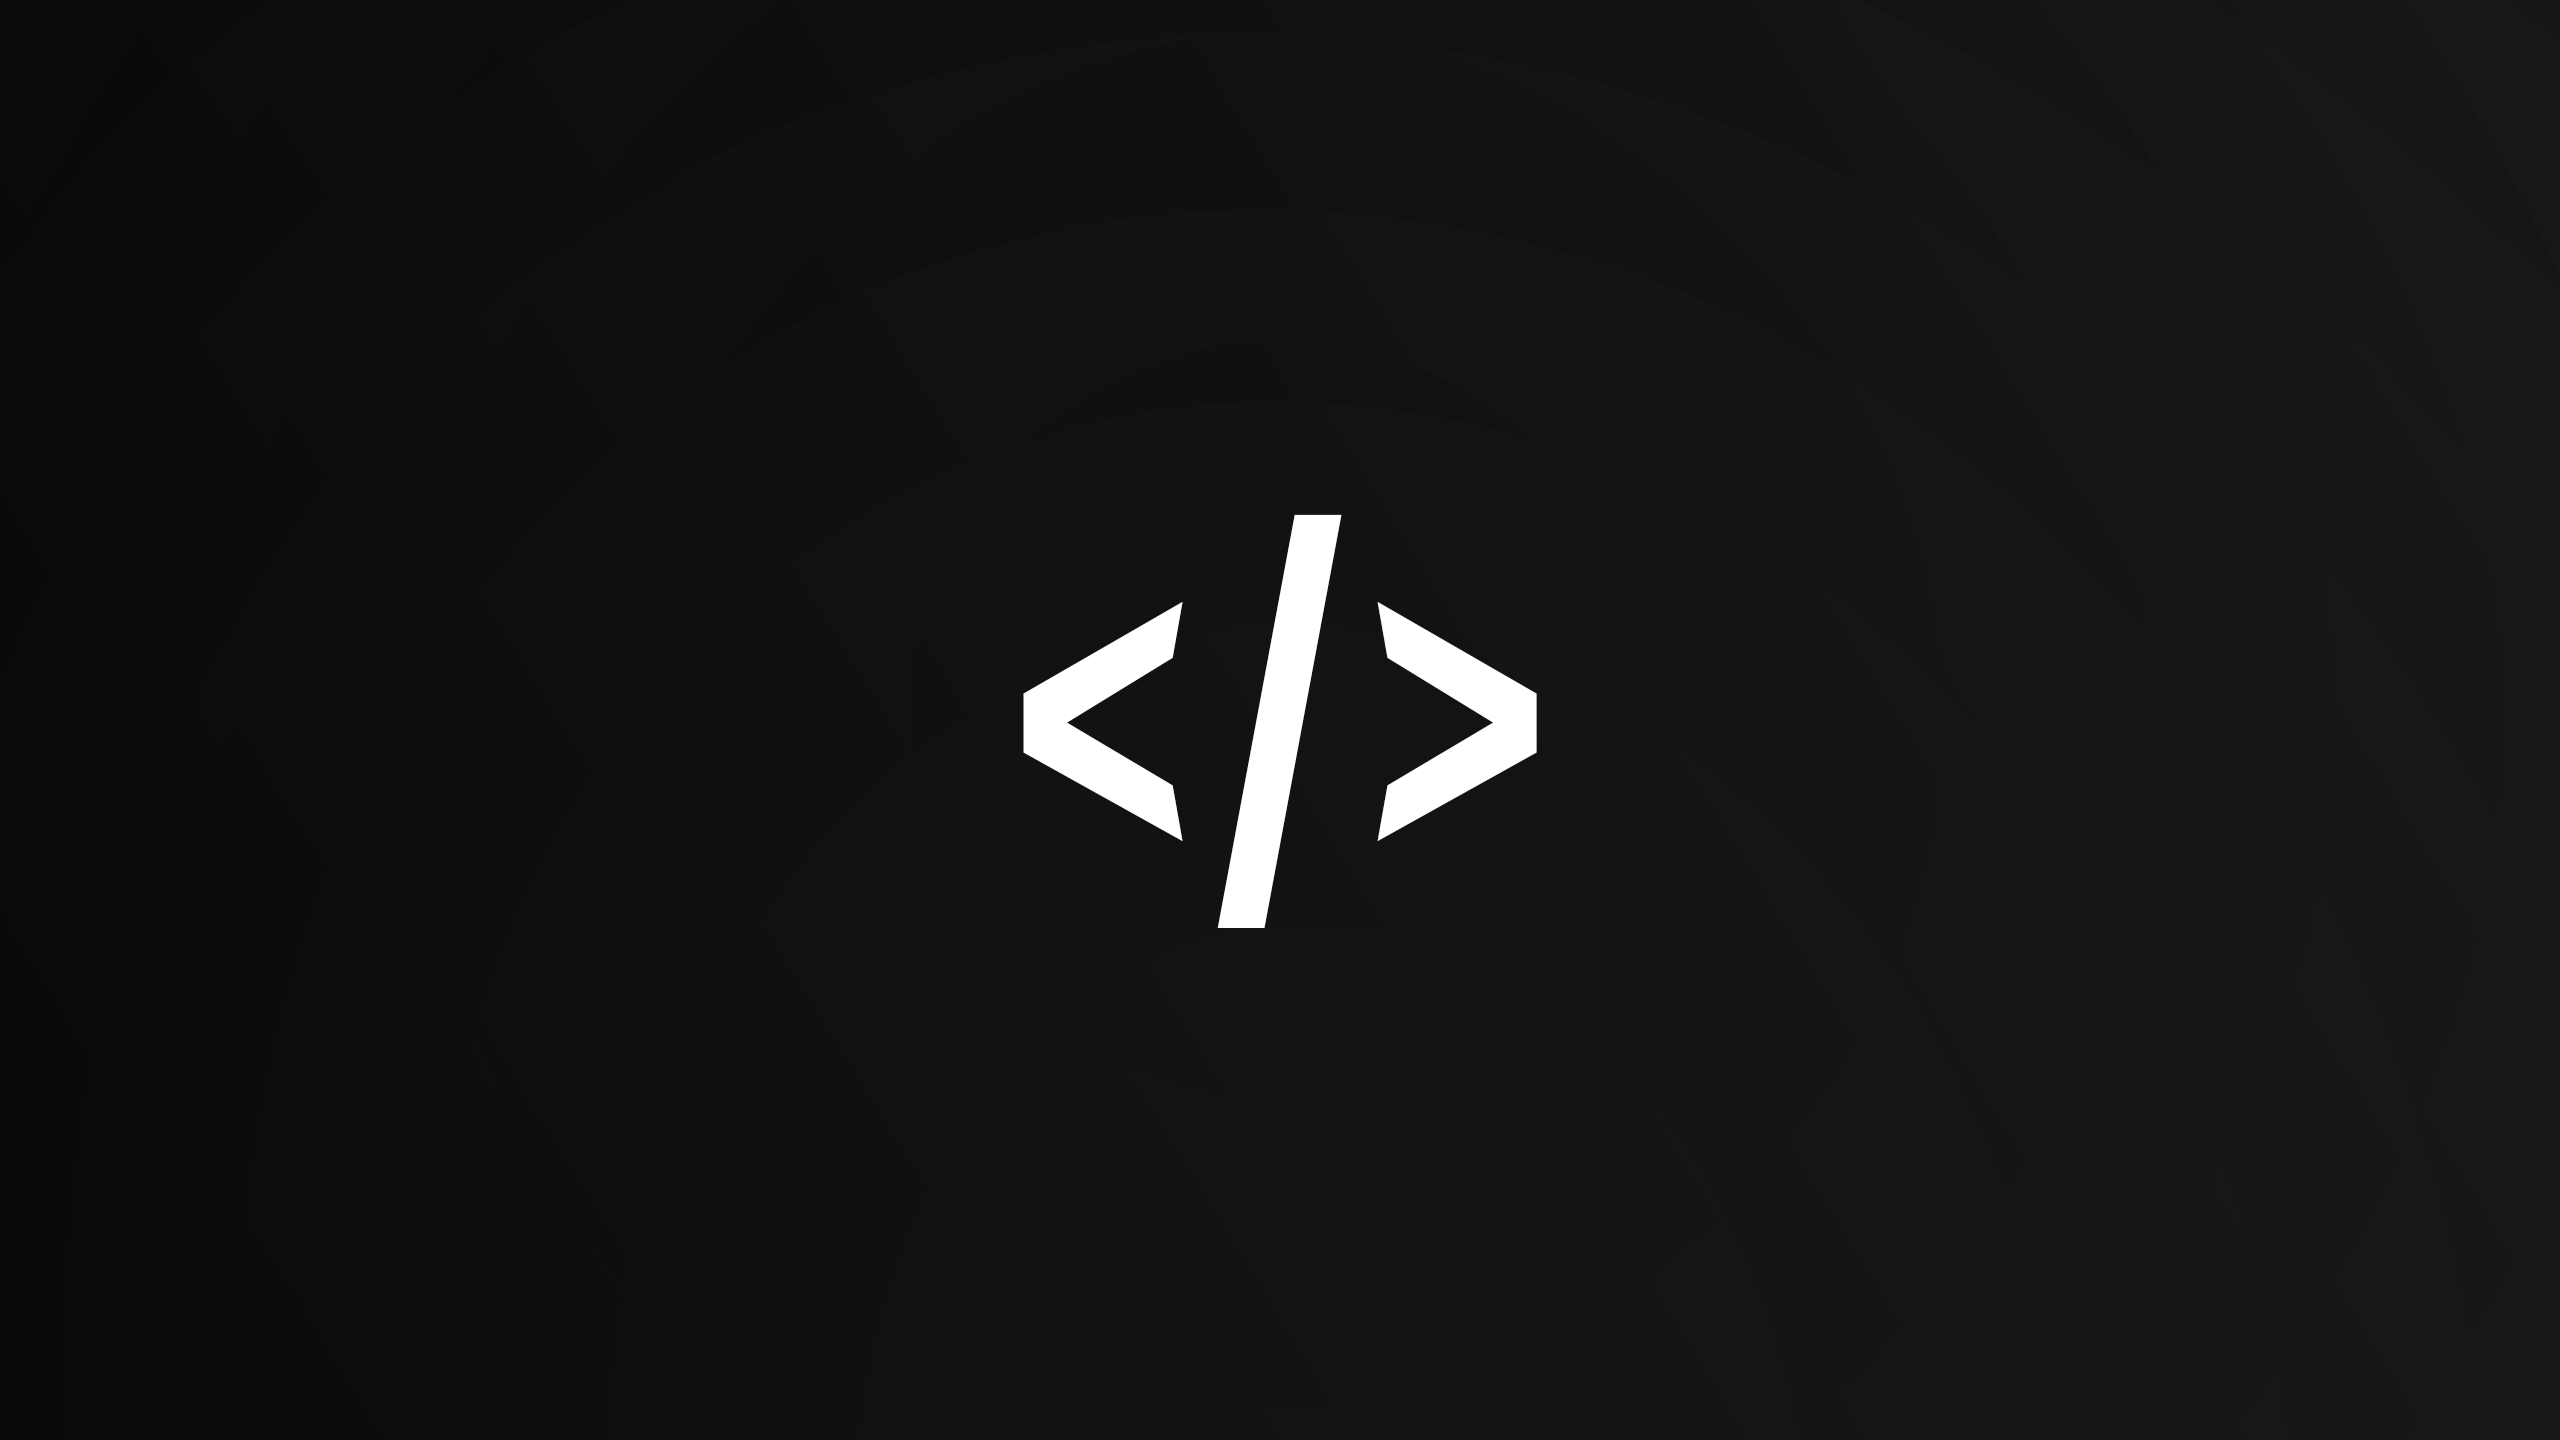 General 2560x1440 black white programming programming language Python (programming) reactJS HTML